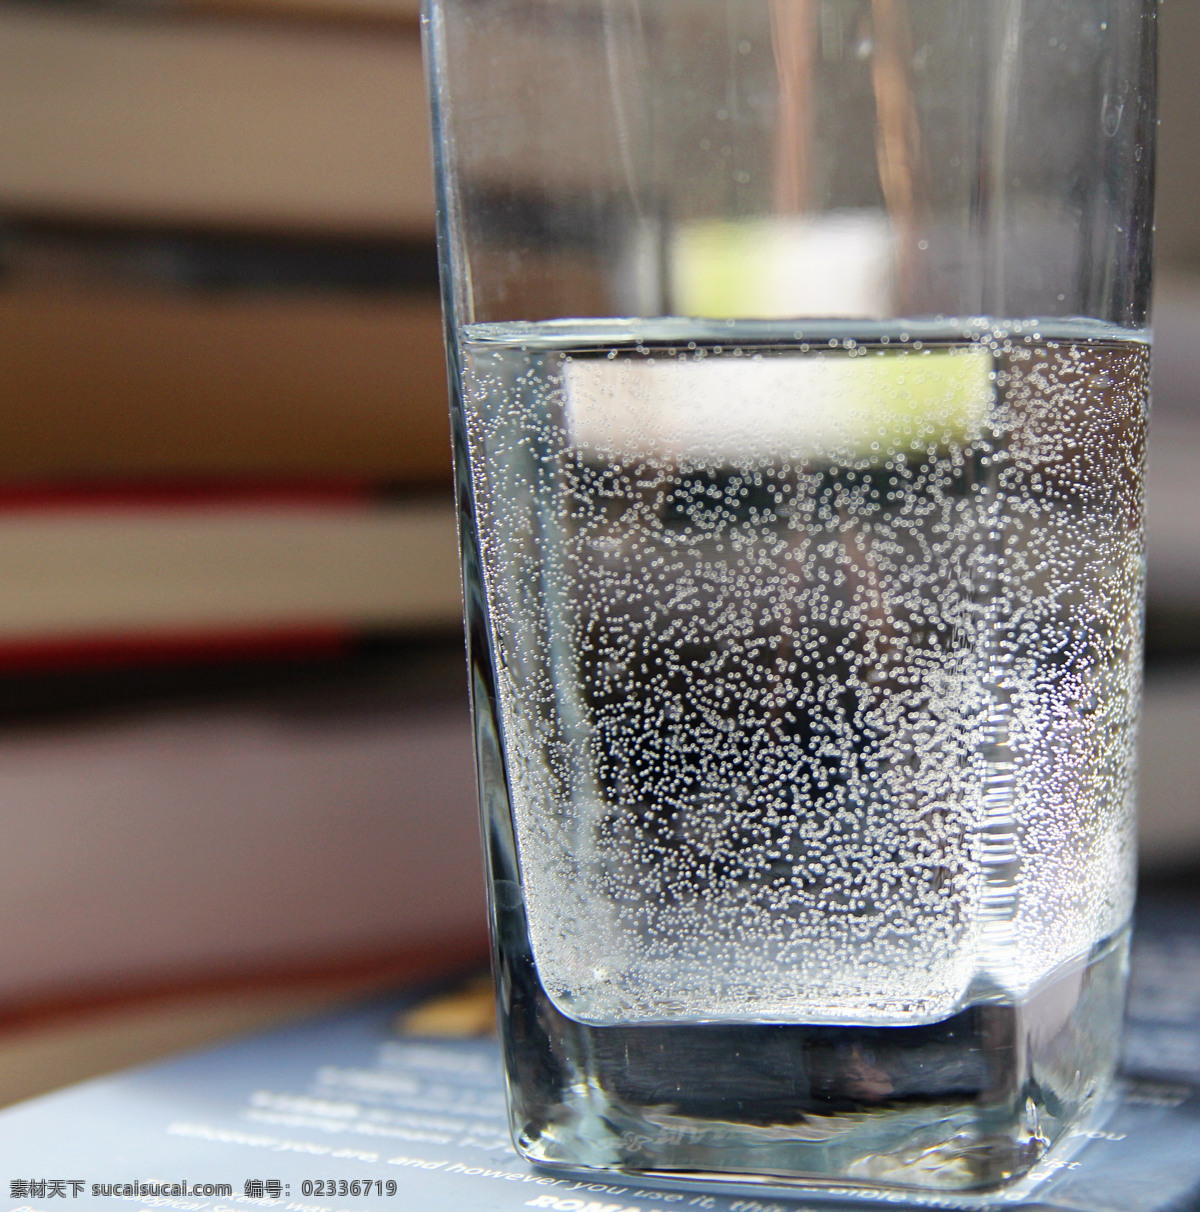 冷开水 一杯水 水杯 玻璃杯 清水 白开水 生活百科 家居生活 摄影图库 餐饮美食 饮料酒水